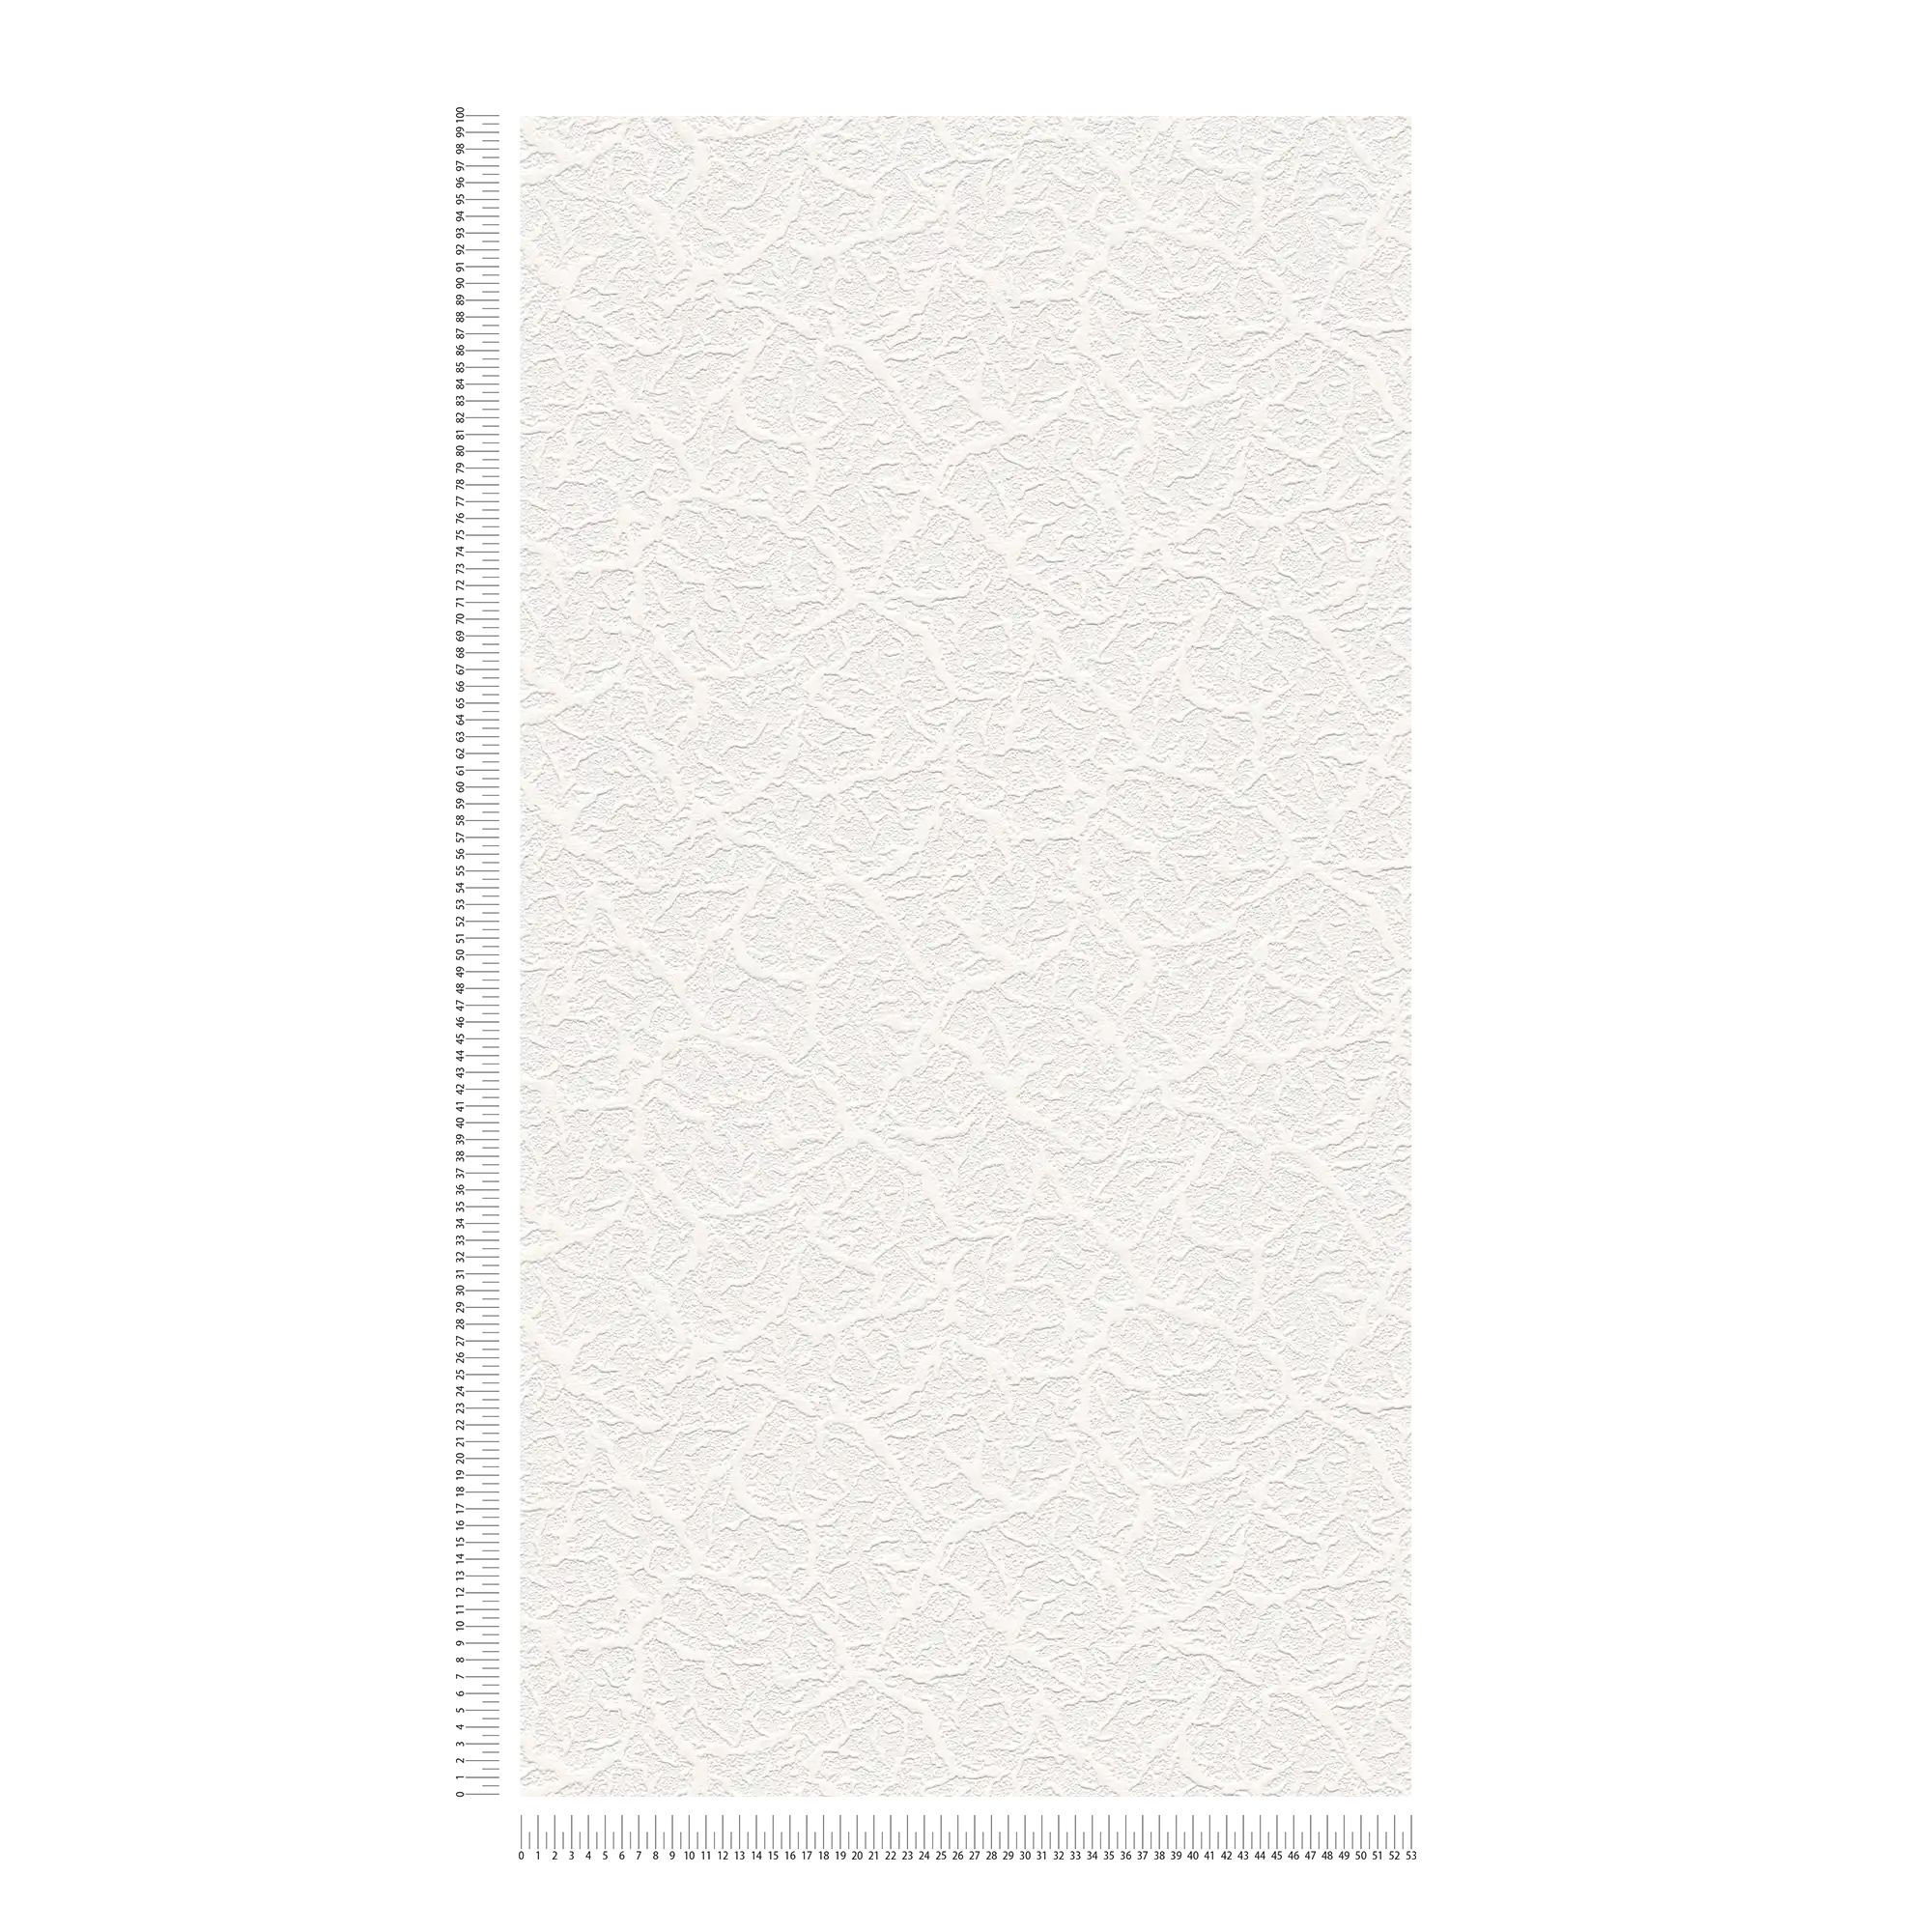             Papiertapete Weiß mit natürlichem Strukturdesign
        